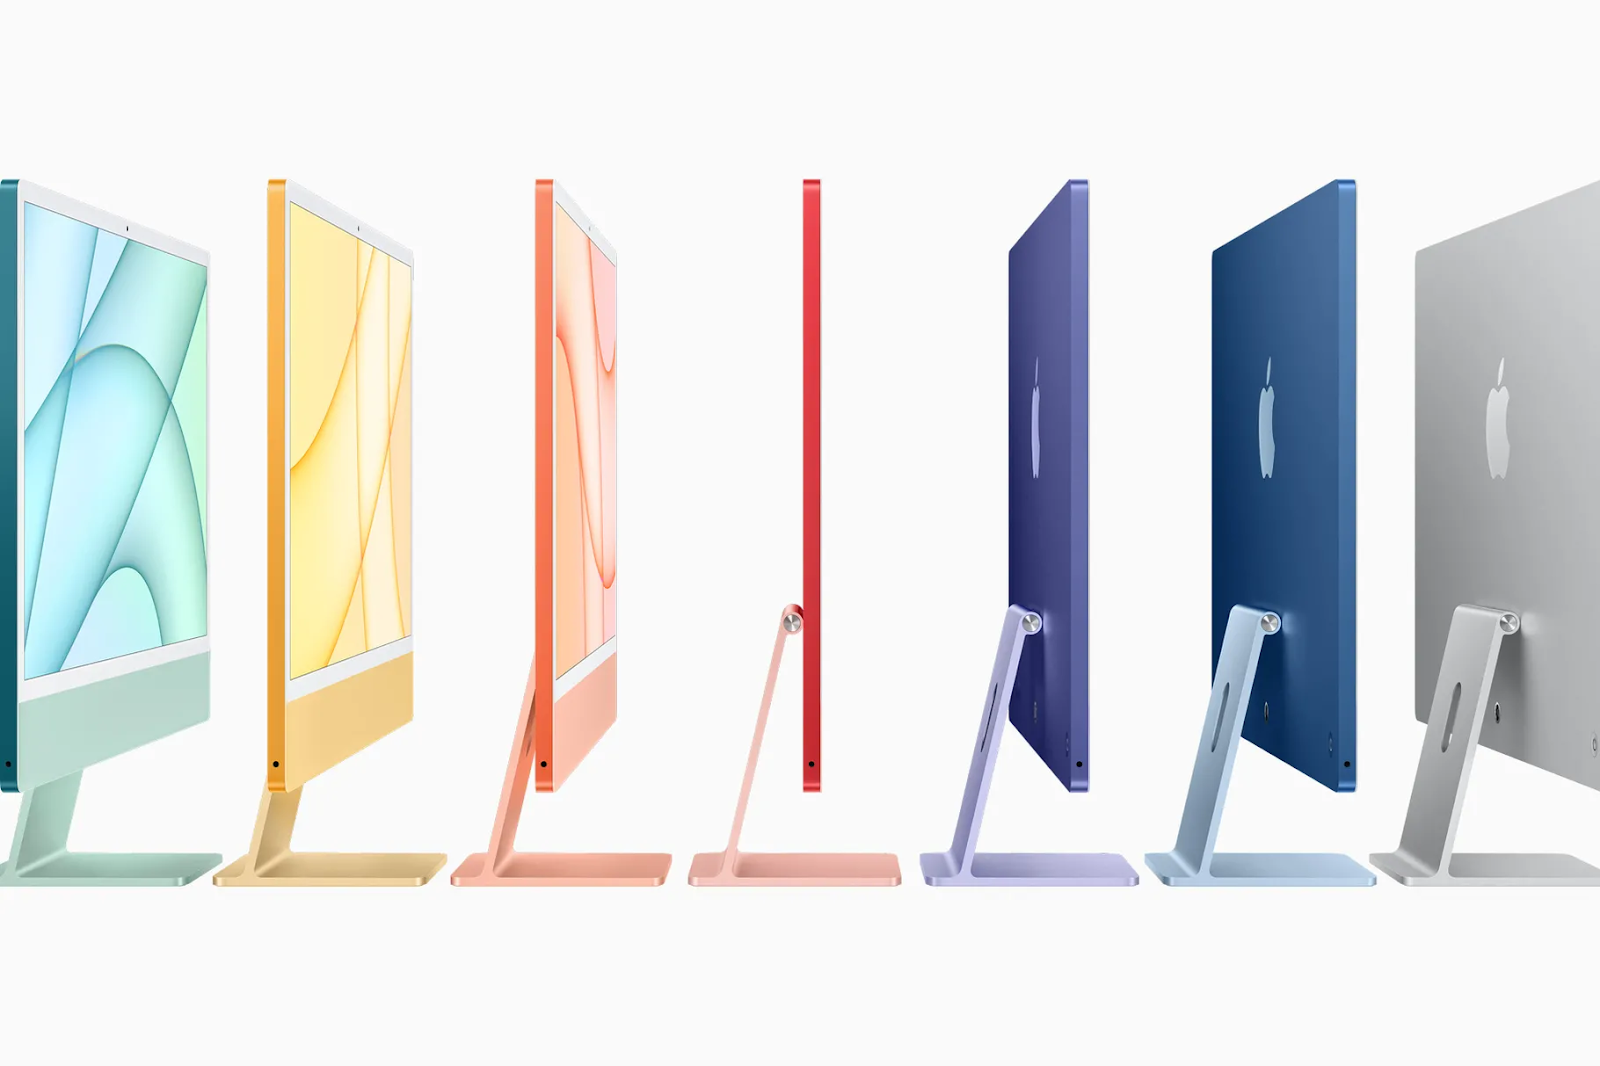 Apple công bố iMac M1 gọn hơn 50% với thiết kế 7 màu rực rỡ, giá từ 1299 đô